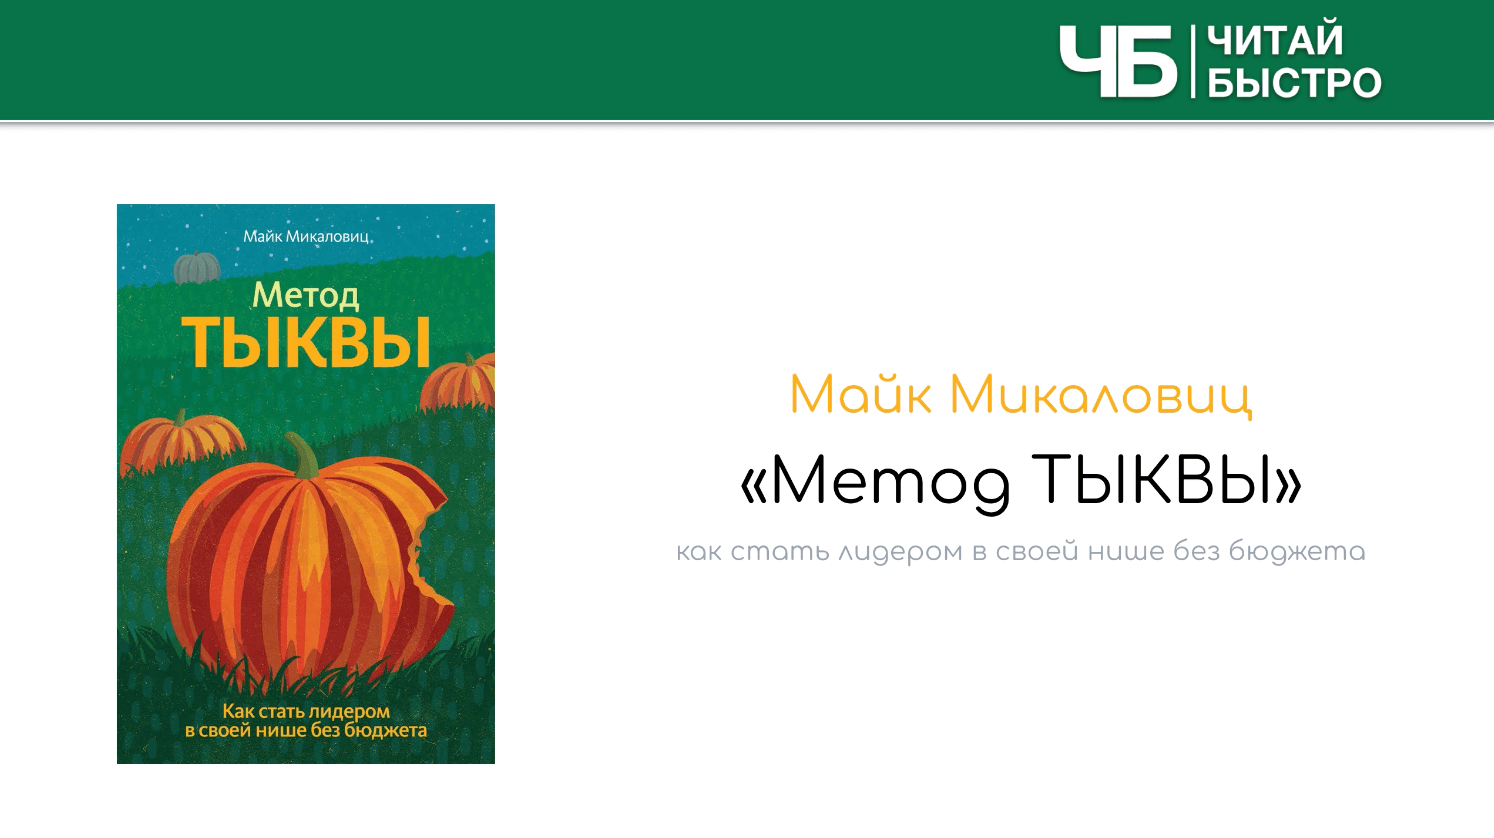 Краткое содержение книги Майка Микаловица «Метод тыквы».